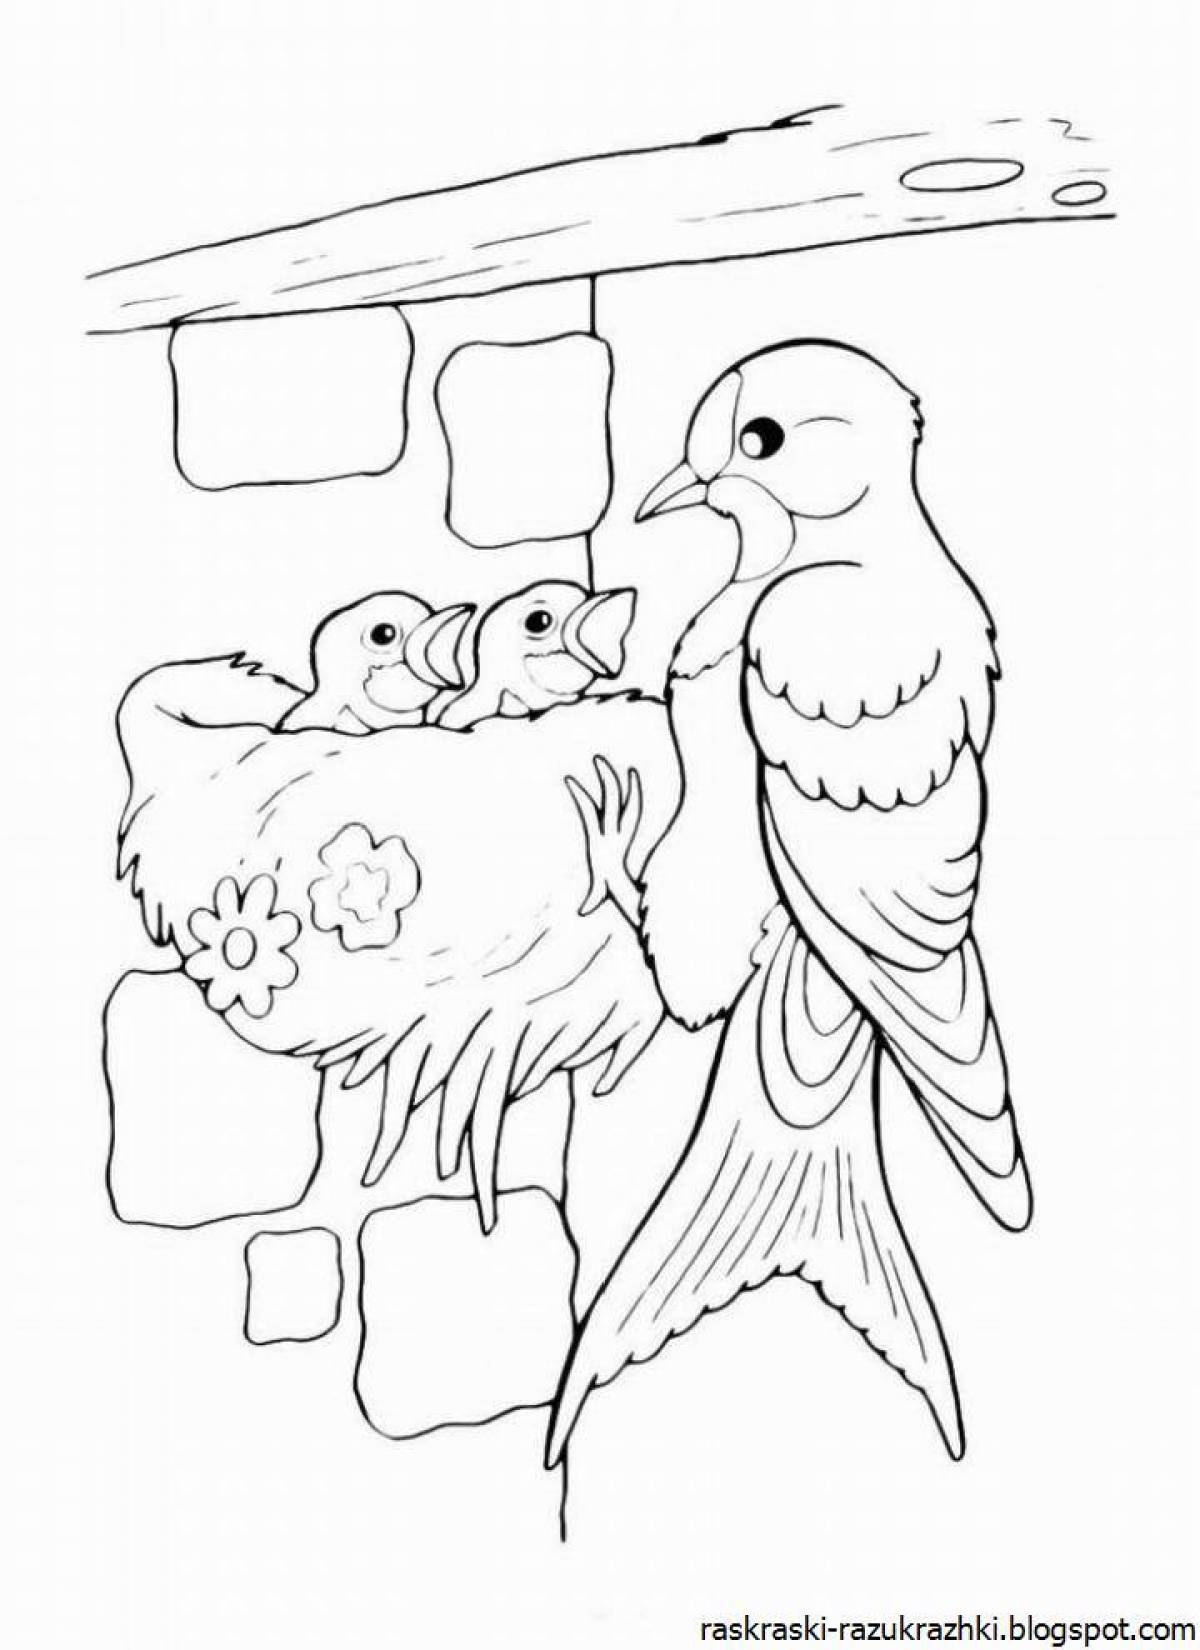 Раскраска с милой птицей для детей 6-7 лет